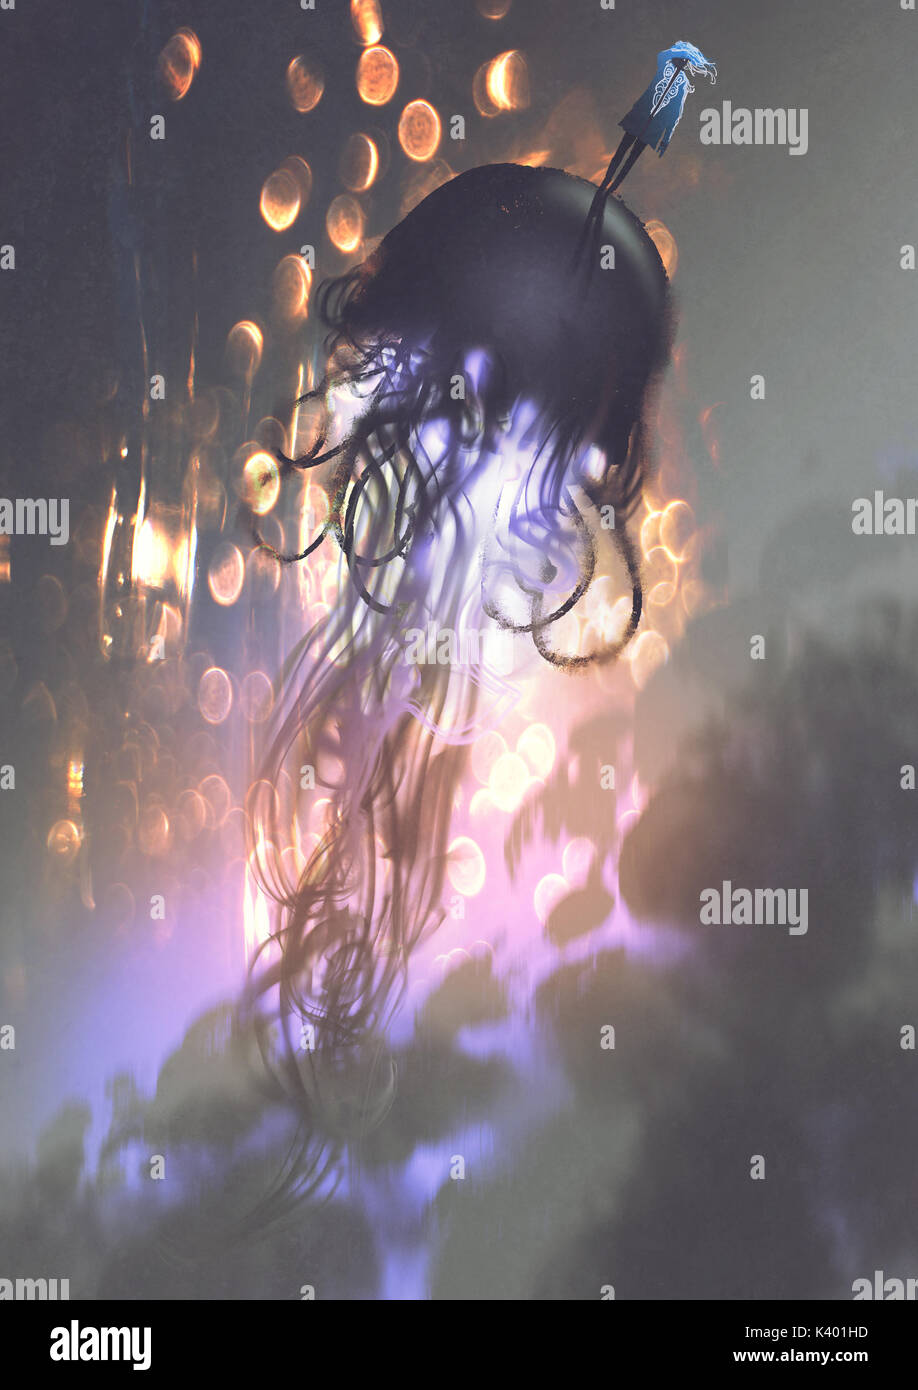 L'uomo e la grande meduse galleggianti in aria con luce incandescente, arte digitale stile, illustrazione pittura Foto Stock